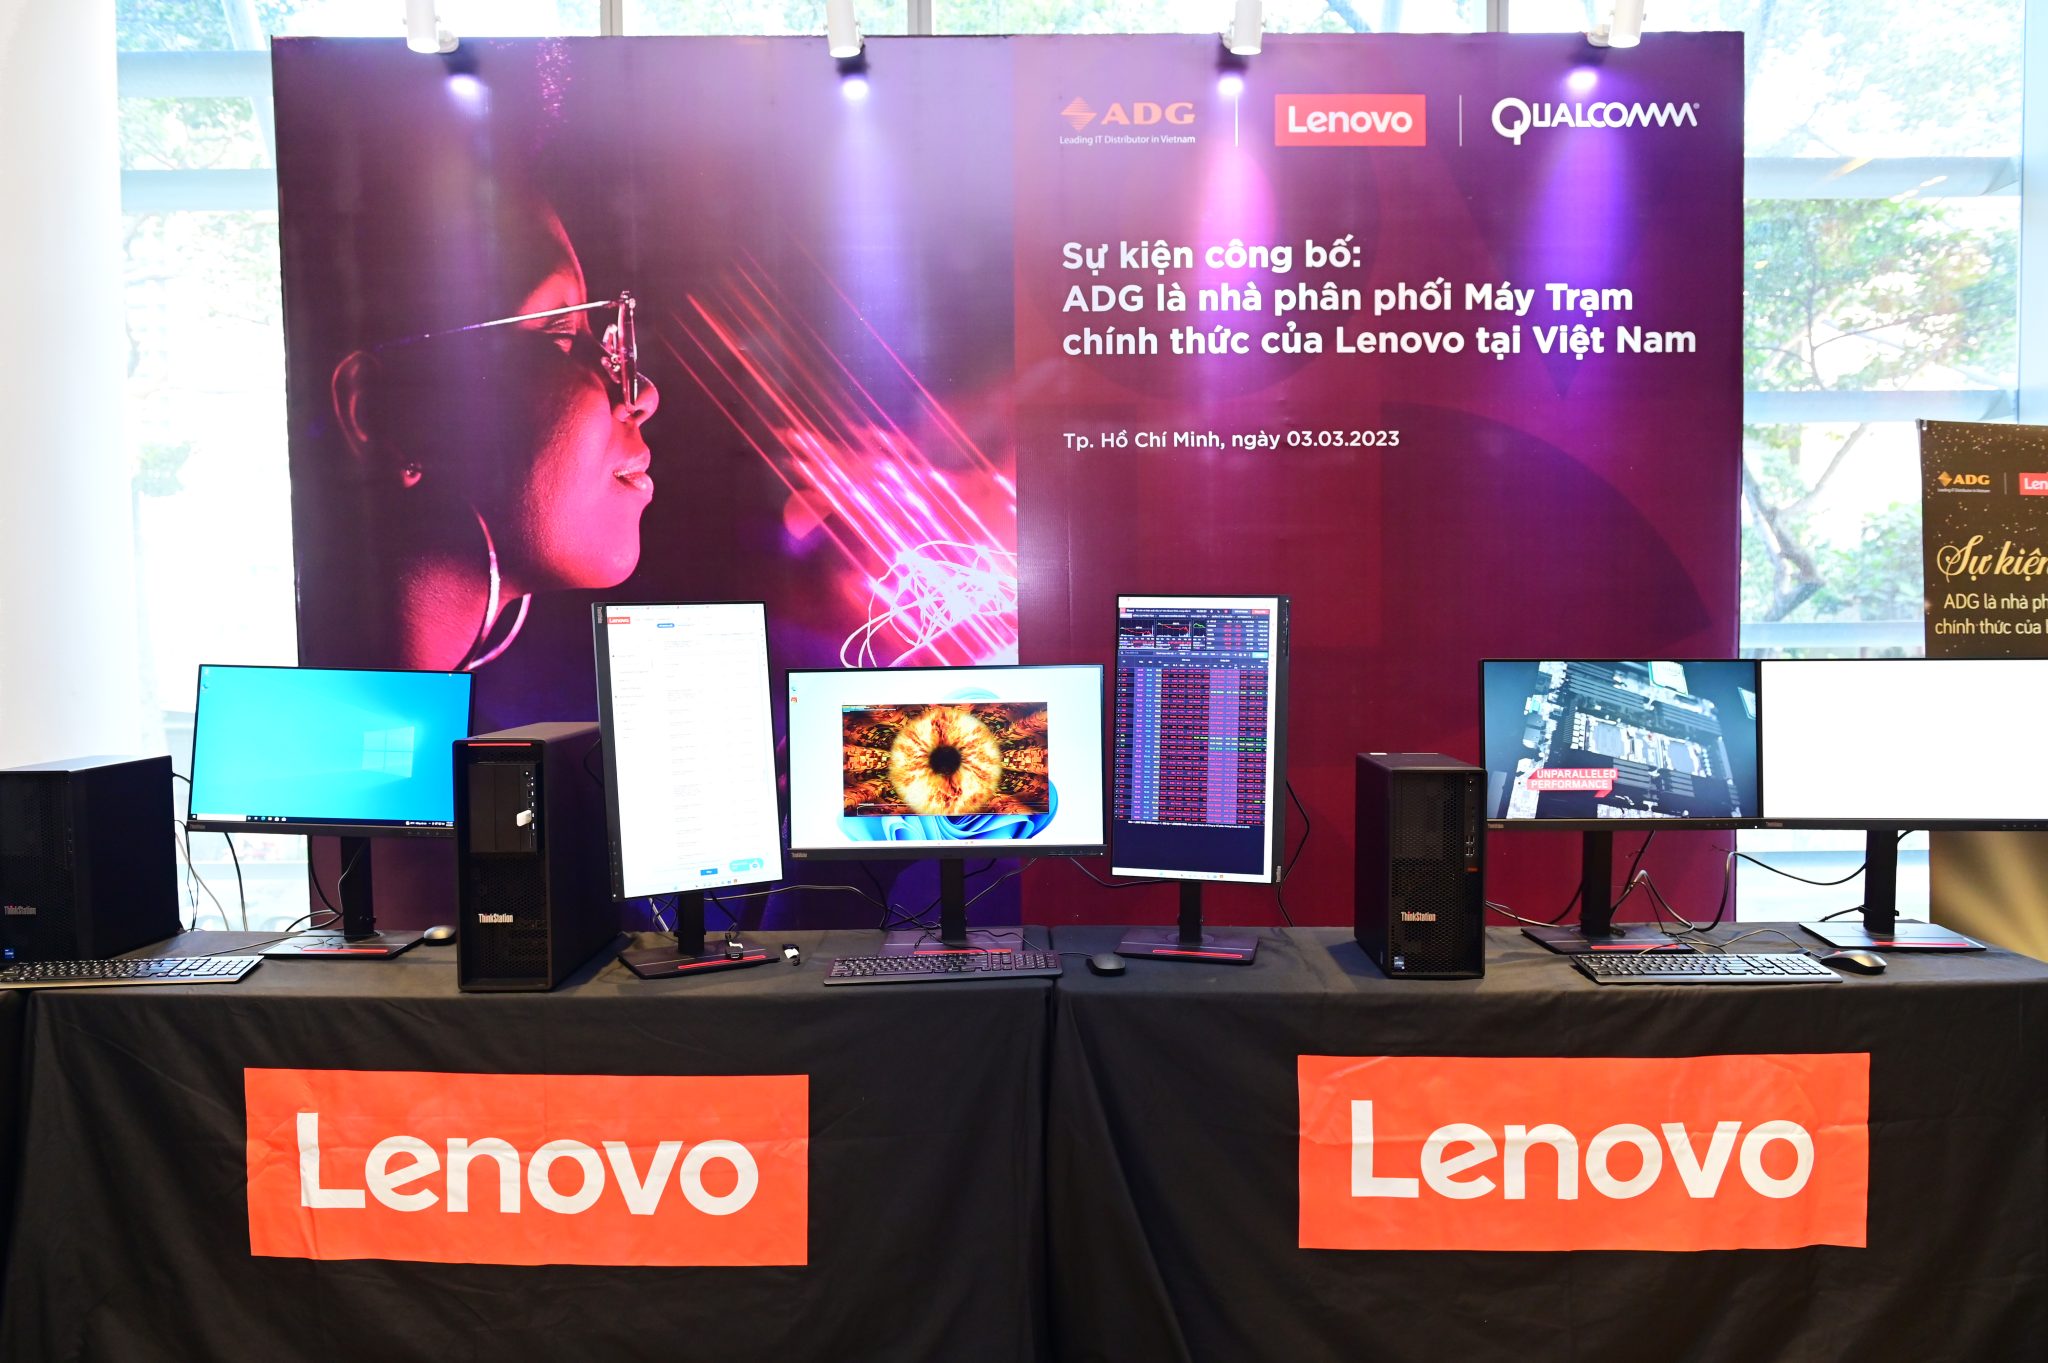 ADG phân phối workstation Lenovo chính hãng tại Việt Nam